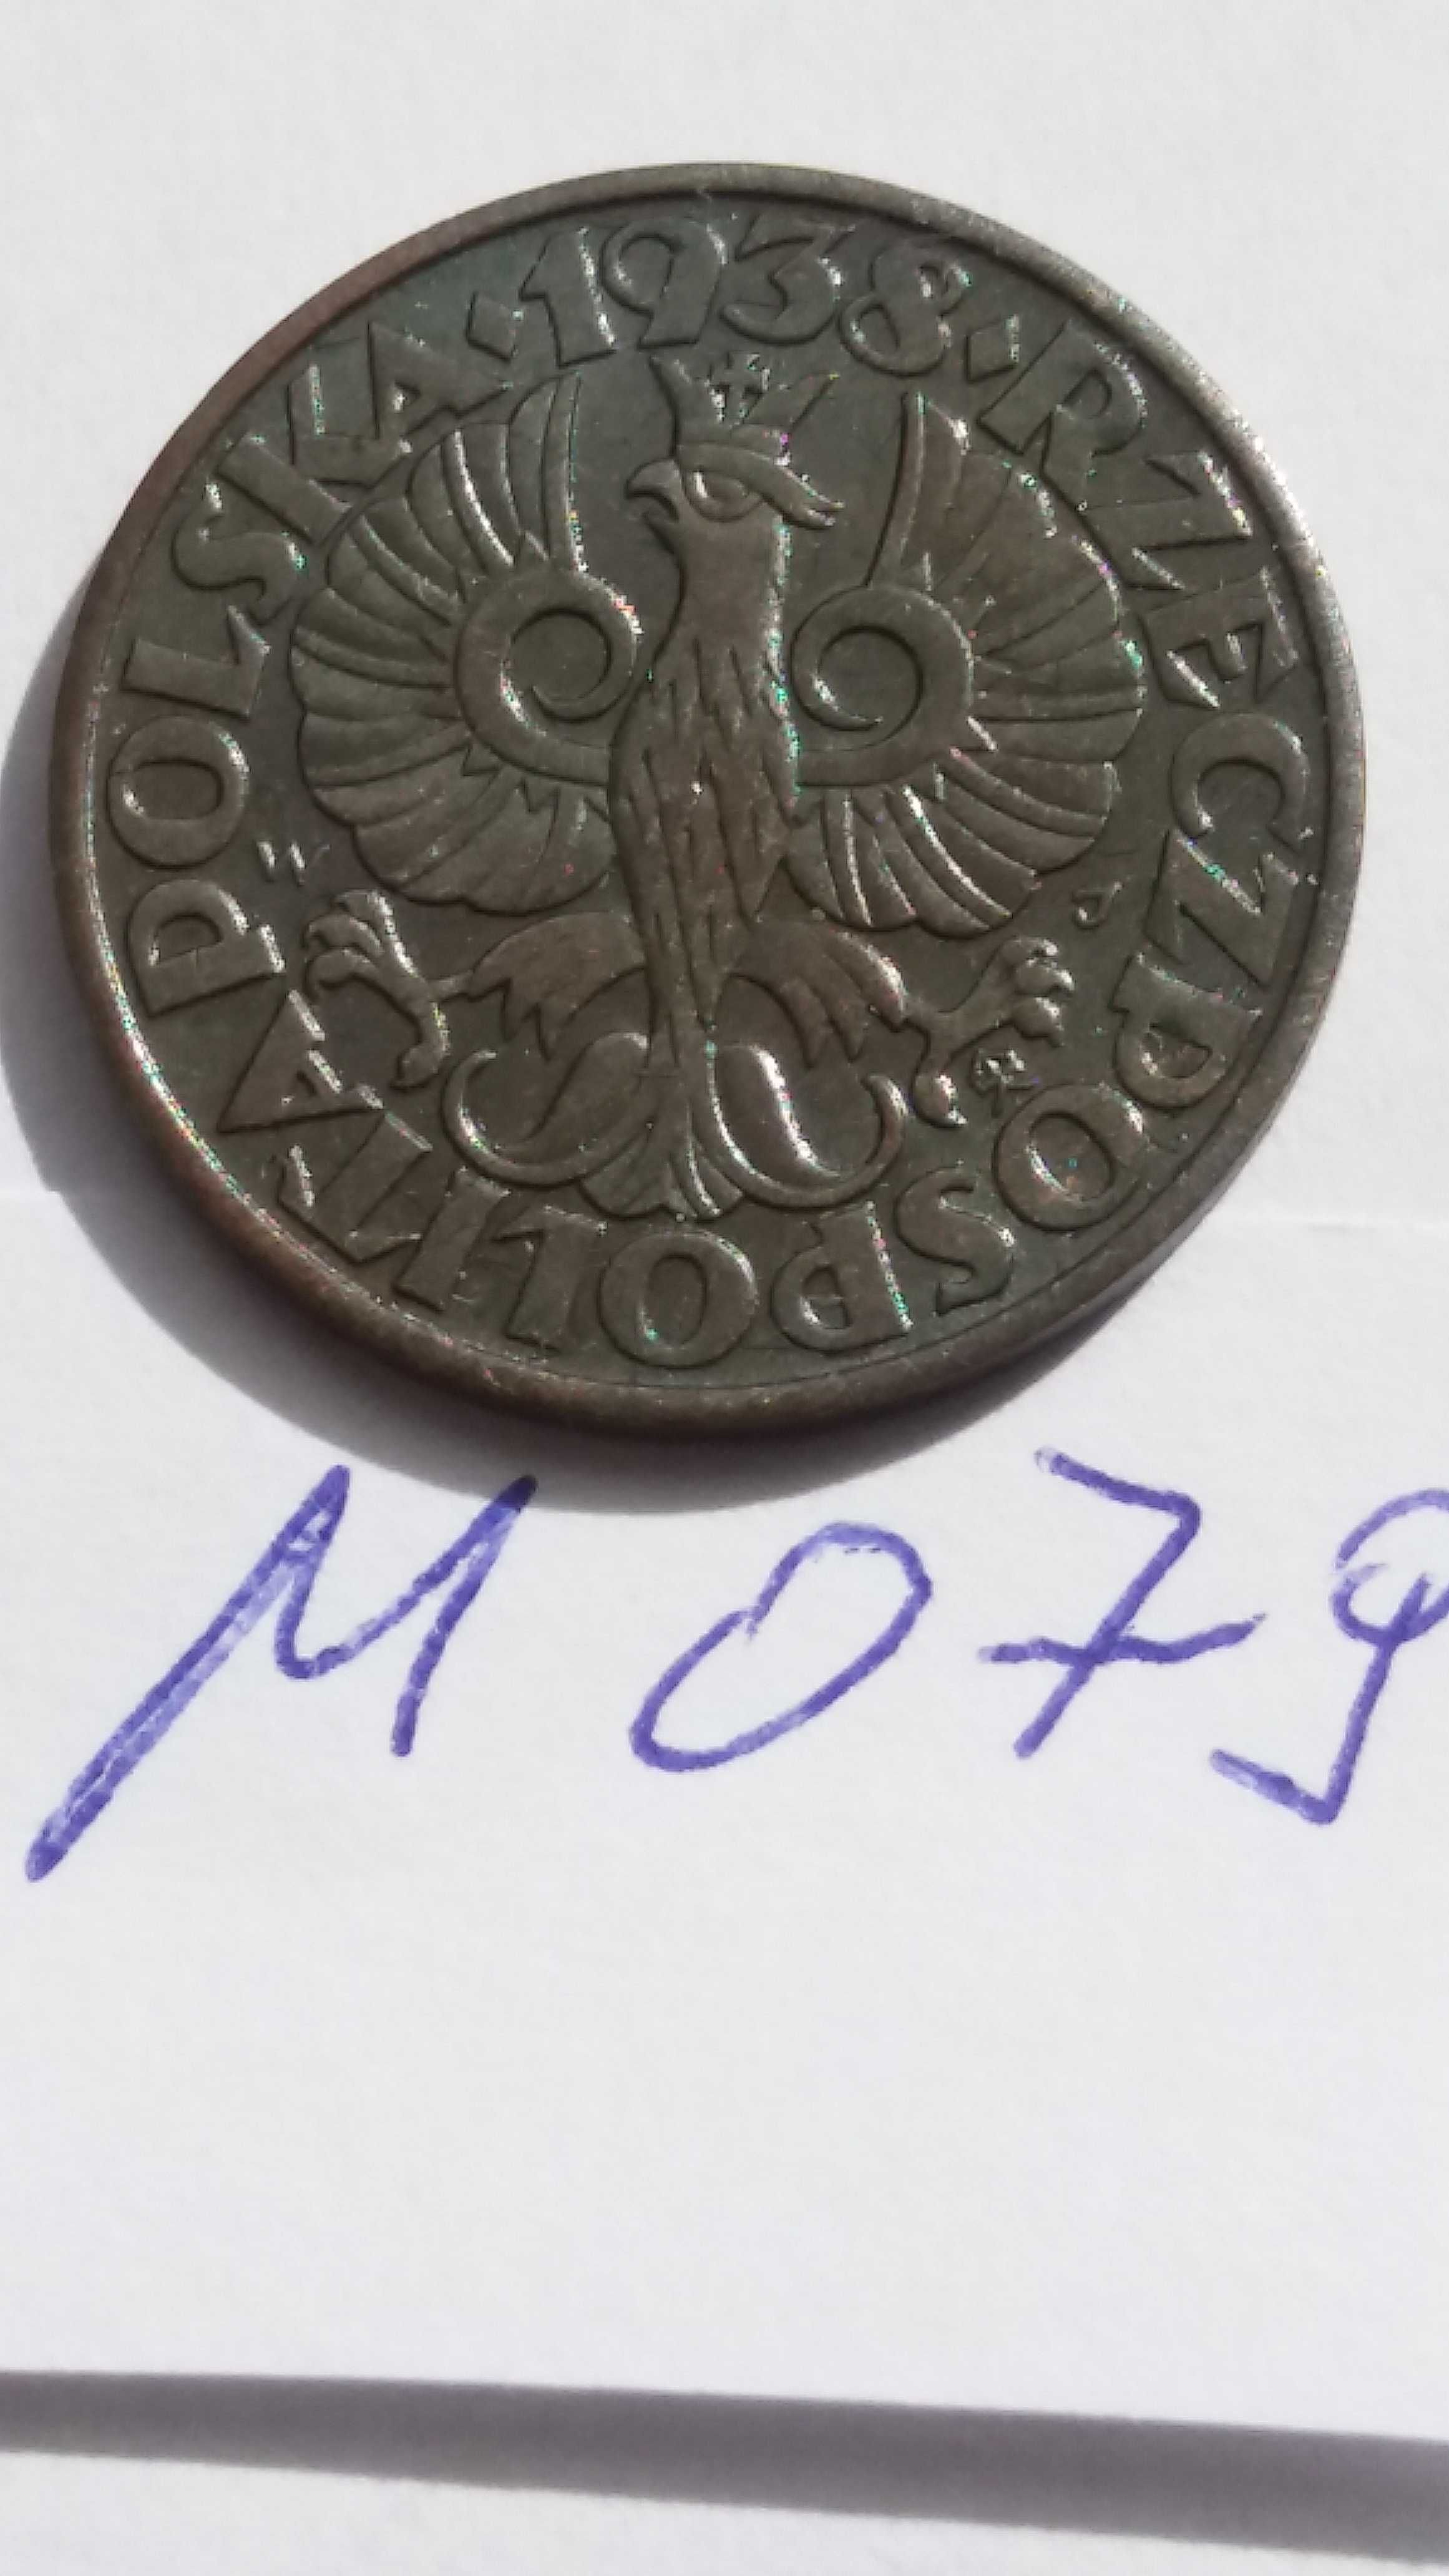 DS M079 stara moneta 5 gr groszy 1938 Polska starocie wyprzedaż